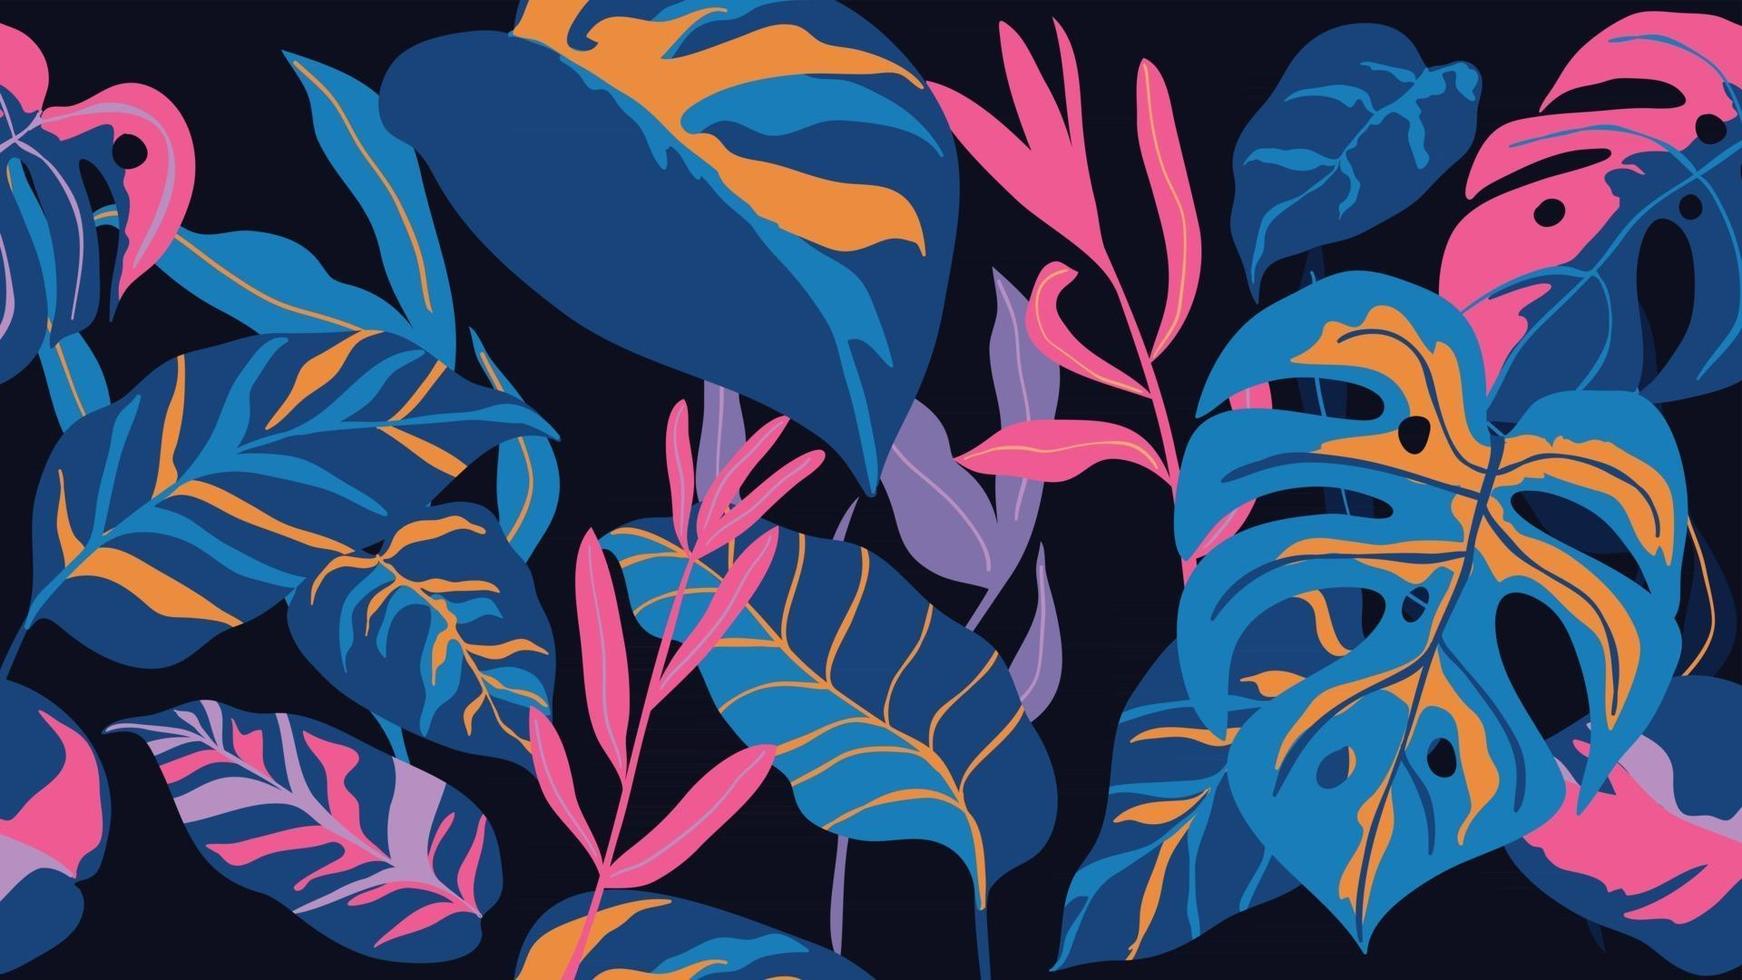 Tropenwald-Art-Deco-Tapete. Blumenmuster mit exotischen Blumen und Blättern, geteilte Philodendron-Pflanze, Monstera-Pflanze, Dschungelpflanzen-Linienkunst auf trendigem Hintergrund. Vektor-Illustration. vektor